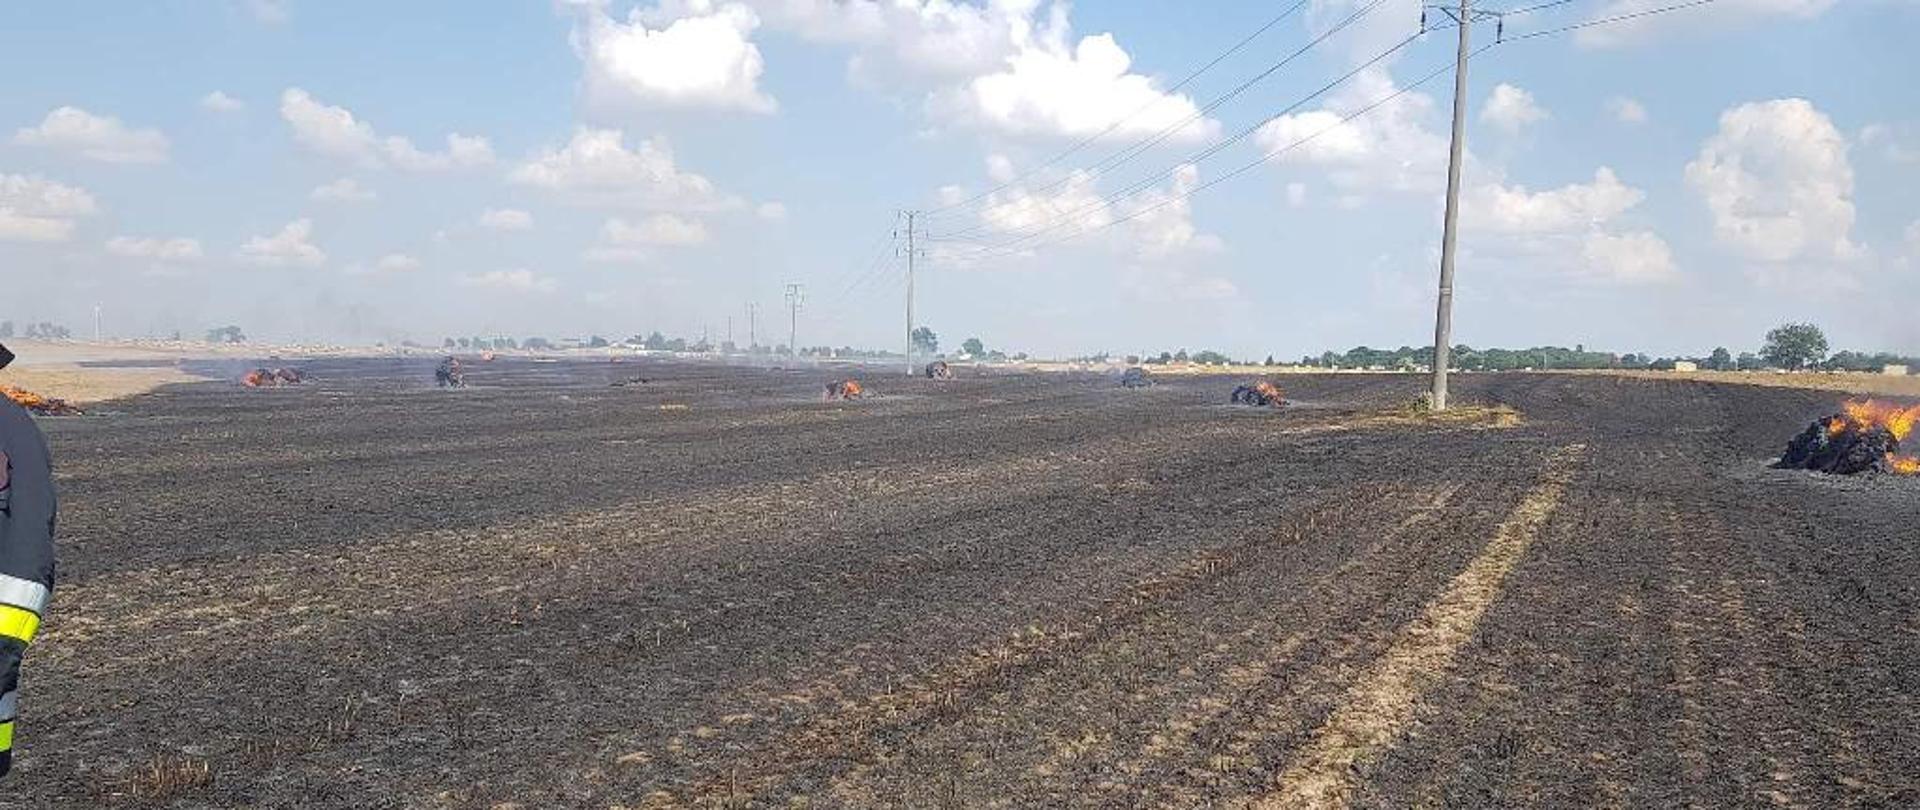 Pożar ścierniska na polu, w oddali widać kilka palących się balotów słomy